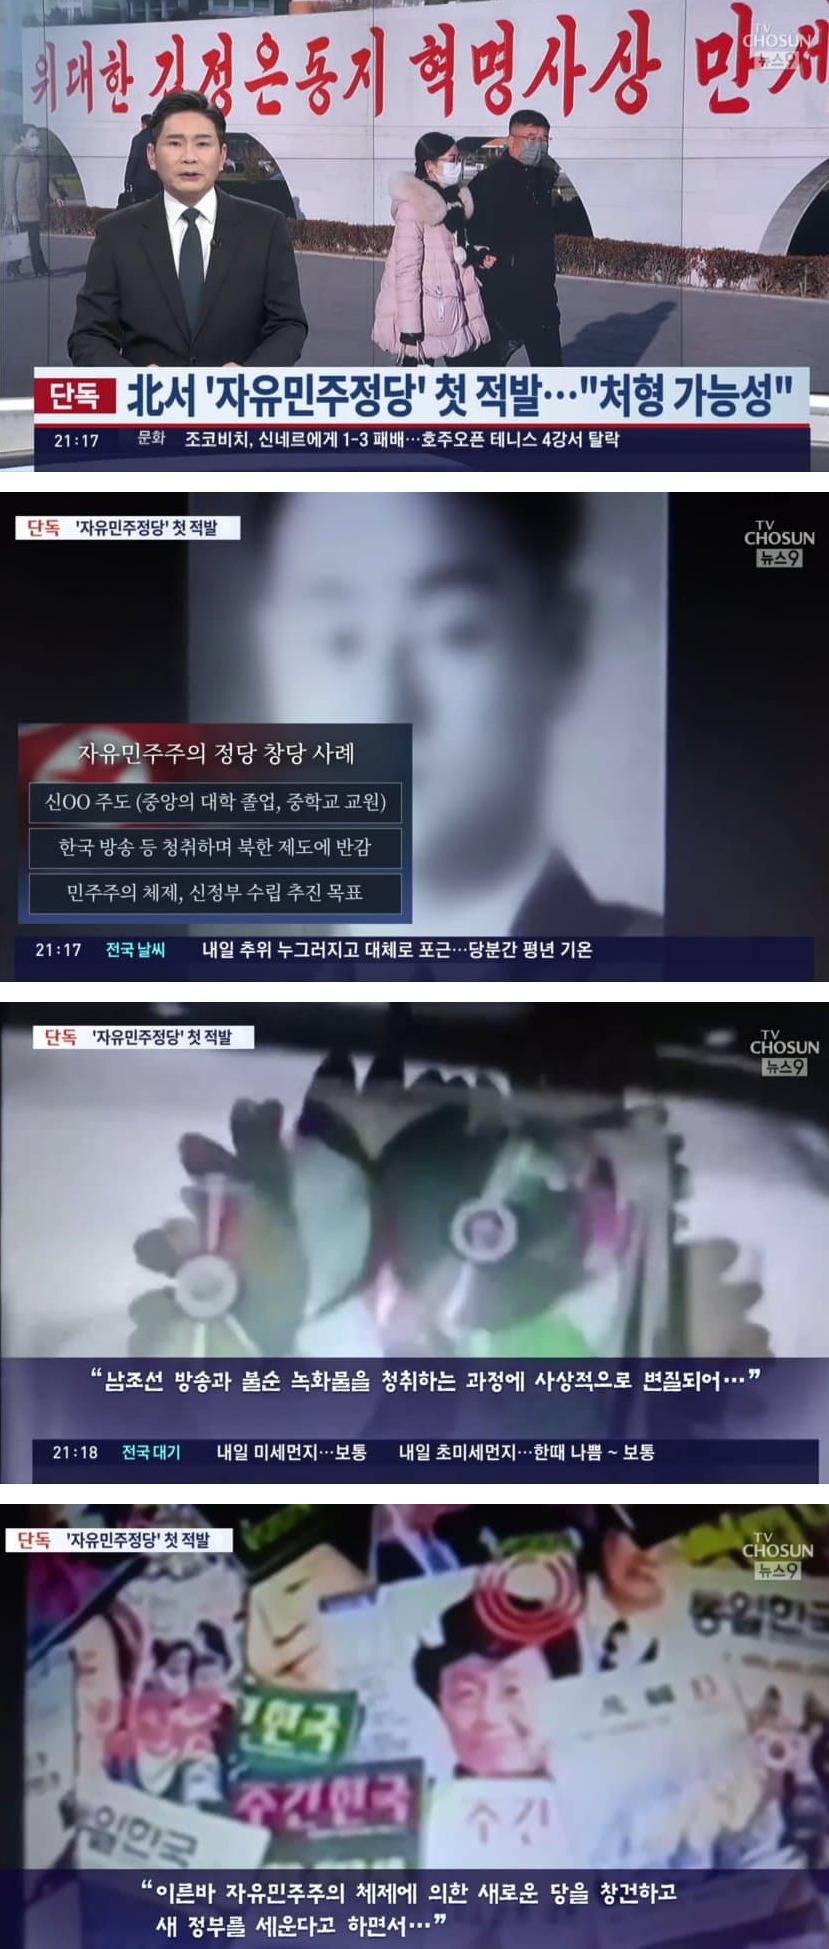 북한에서 적발된 리버스 이석기